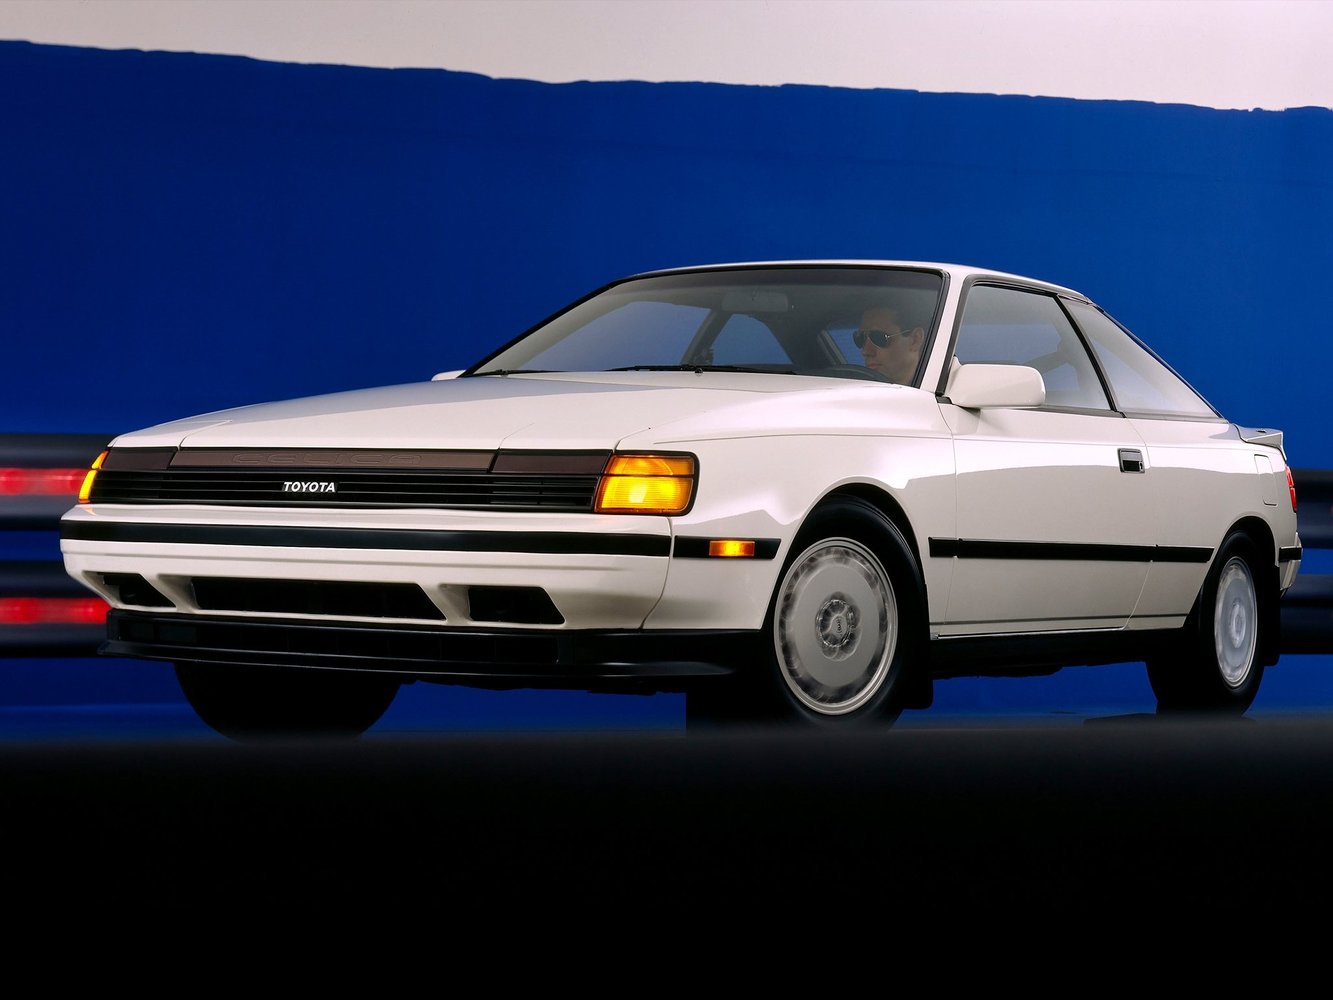 Toyota Celica 1985 - 1989